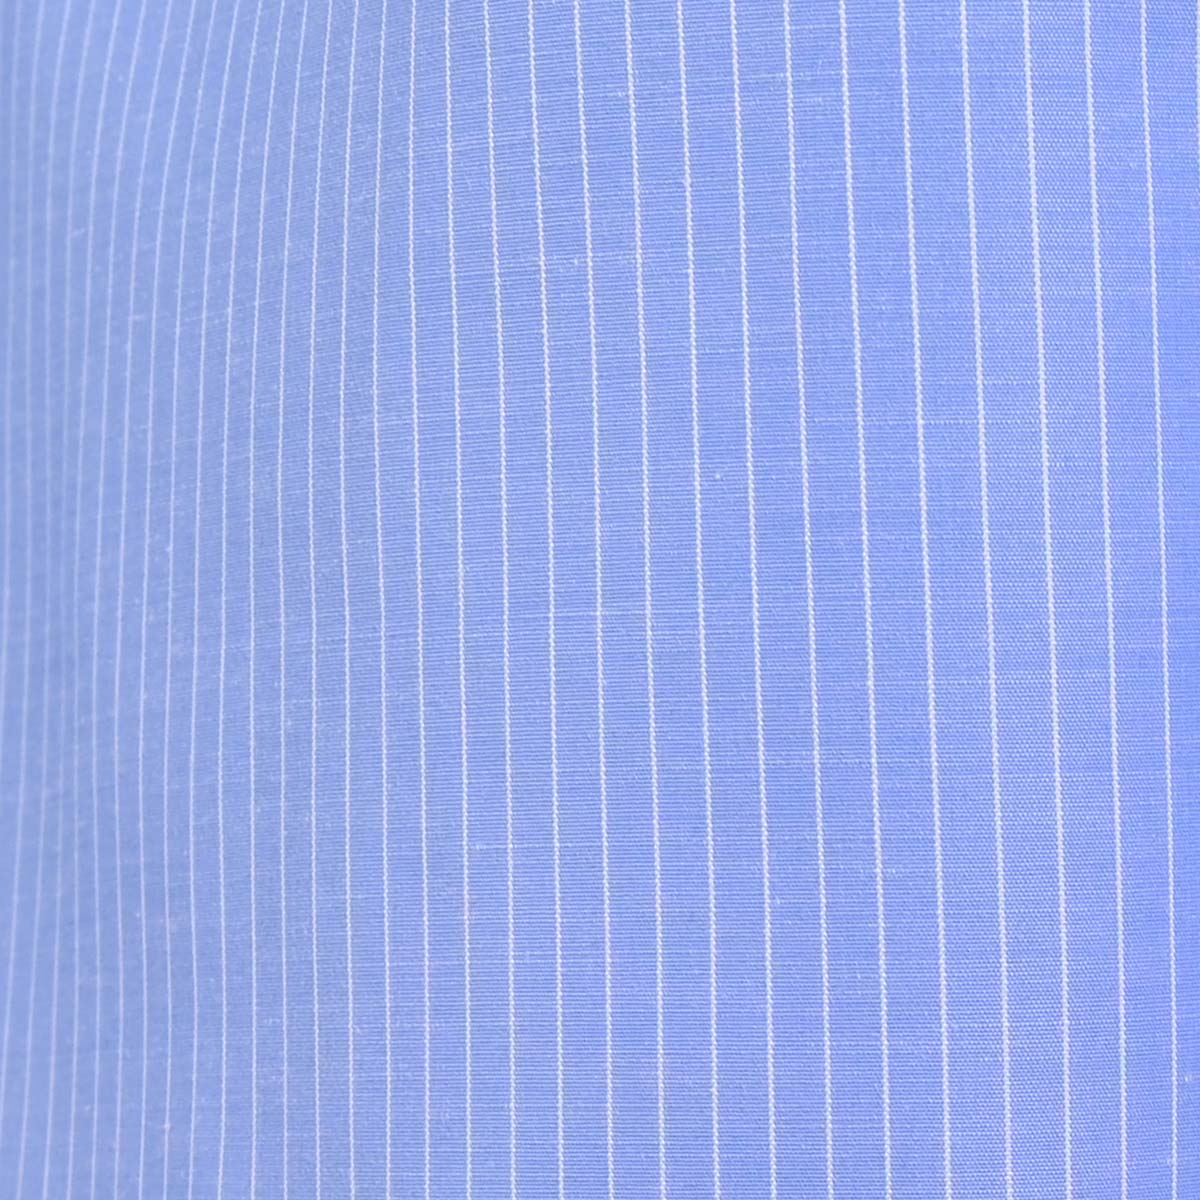 Camisa A Cuello Y Puño Blanco Azul Rayada.